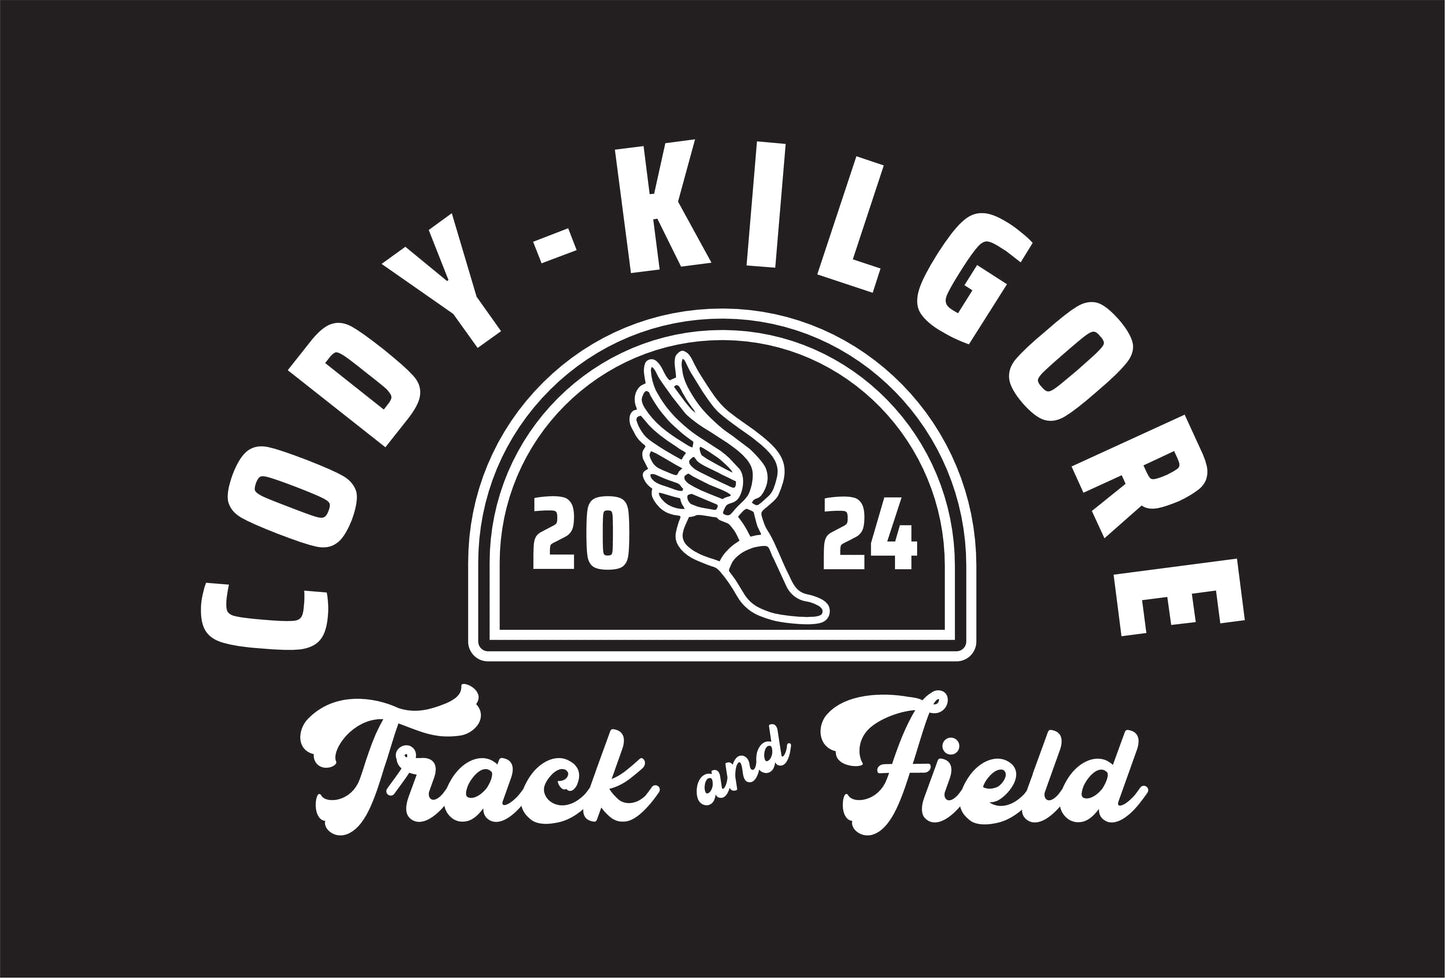 Cody-Kilgore 2024 Track and Field Short Sleeve Tee